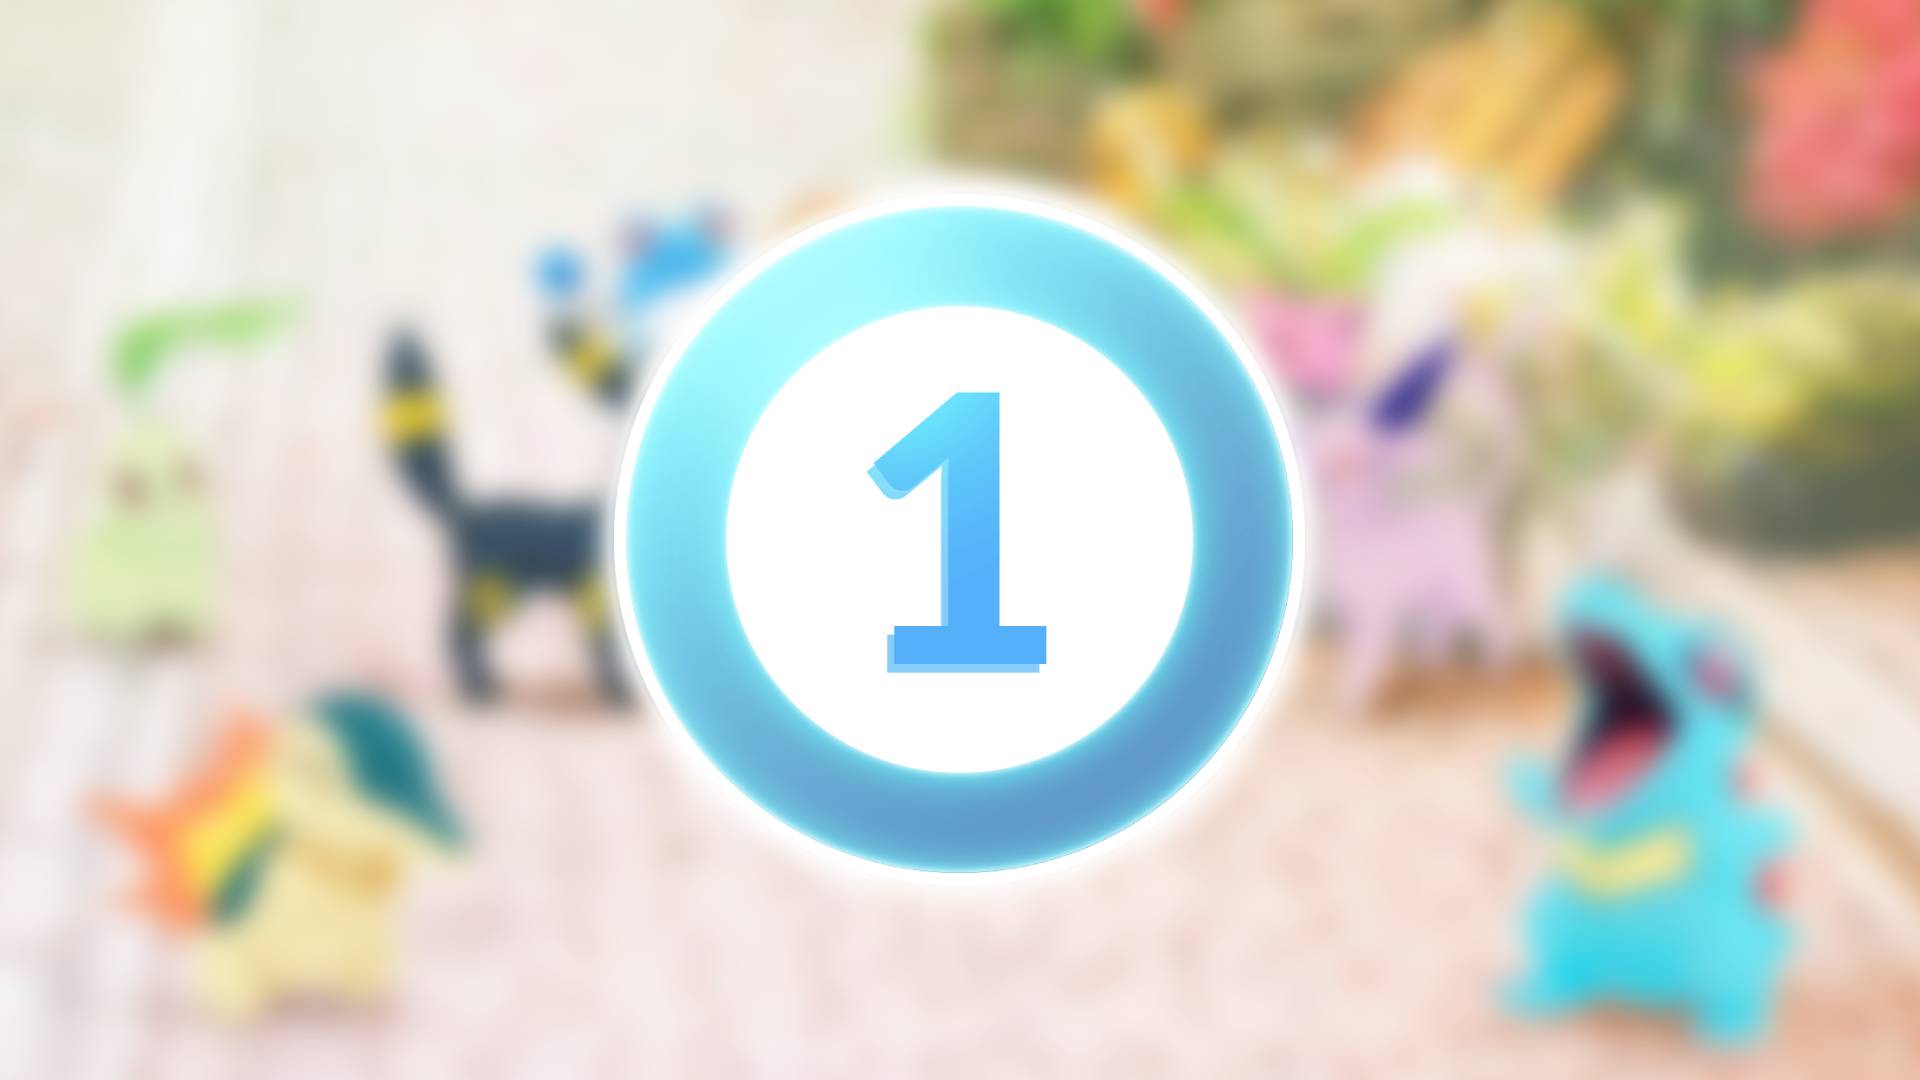 Pokémon Go level requirements, level up item rewards list